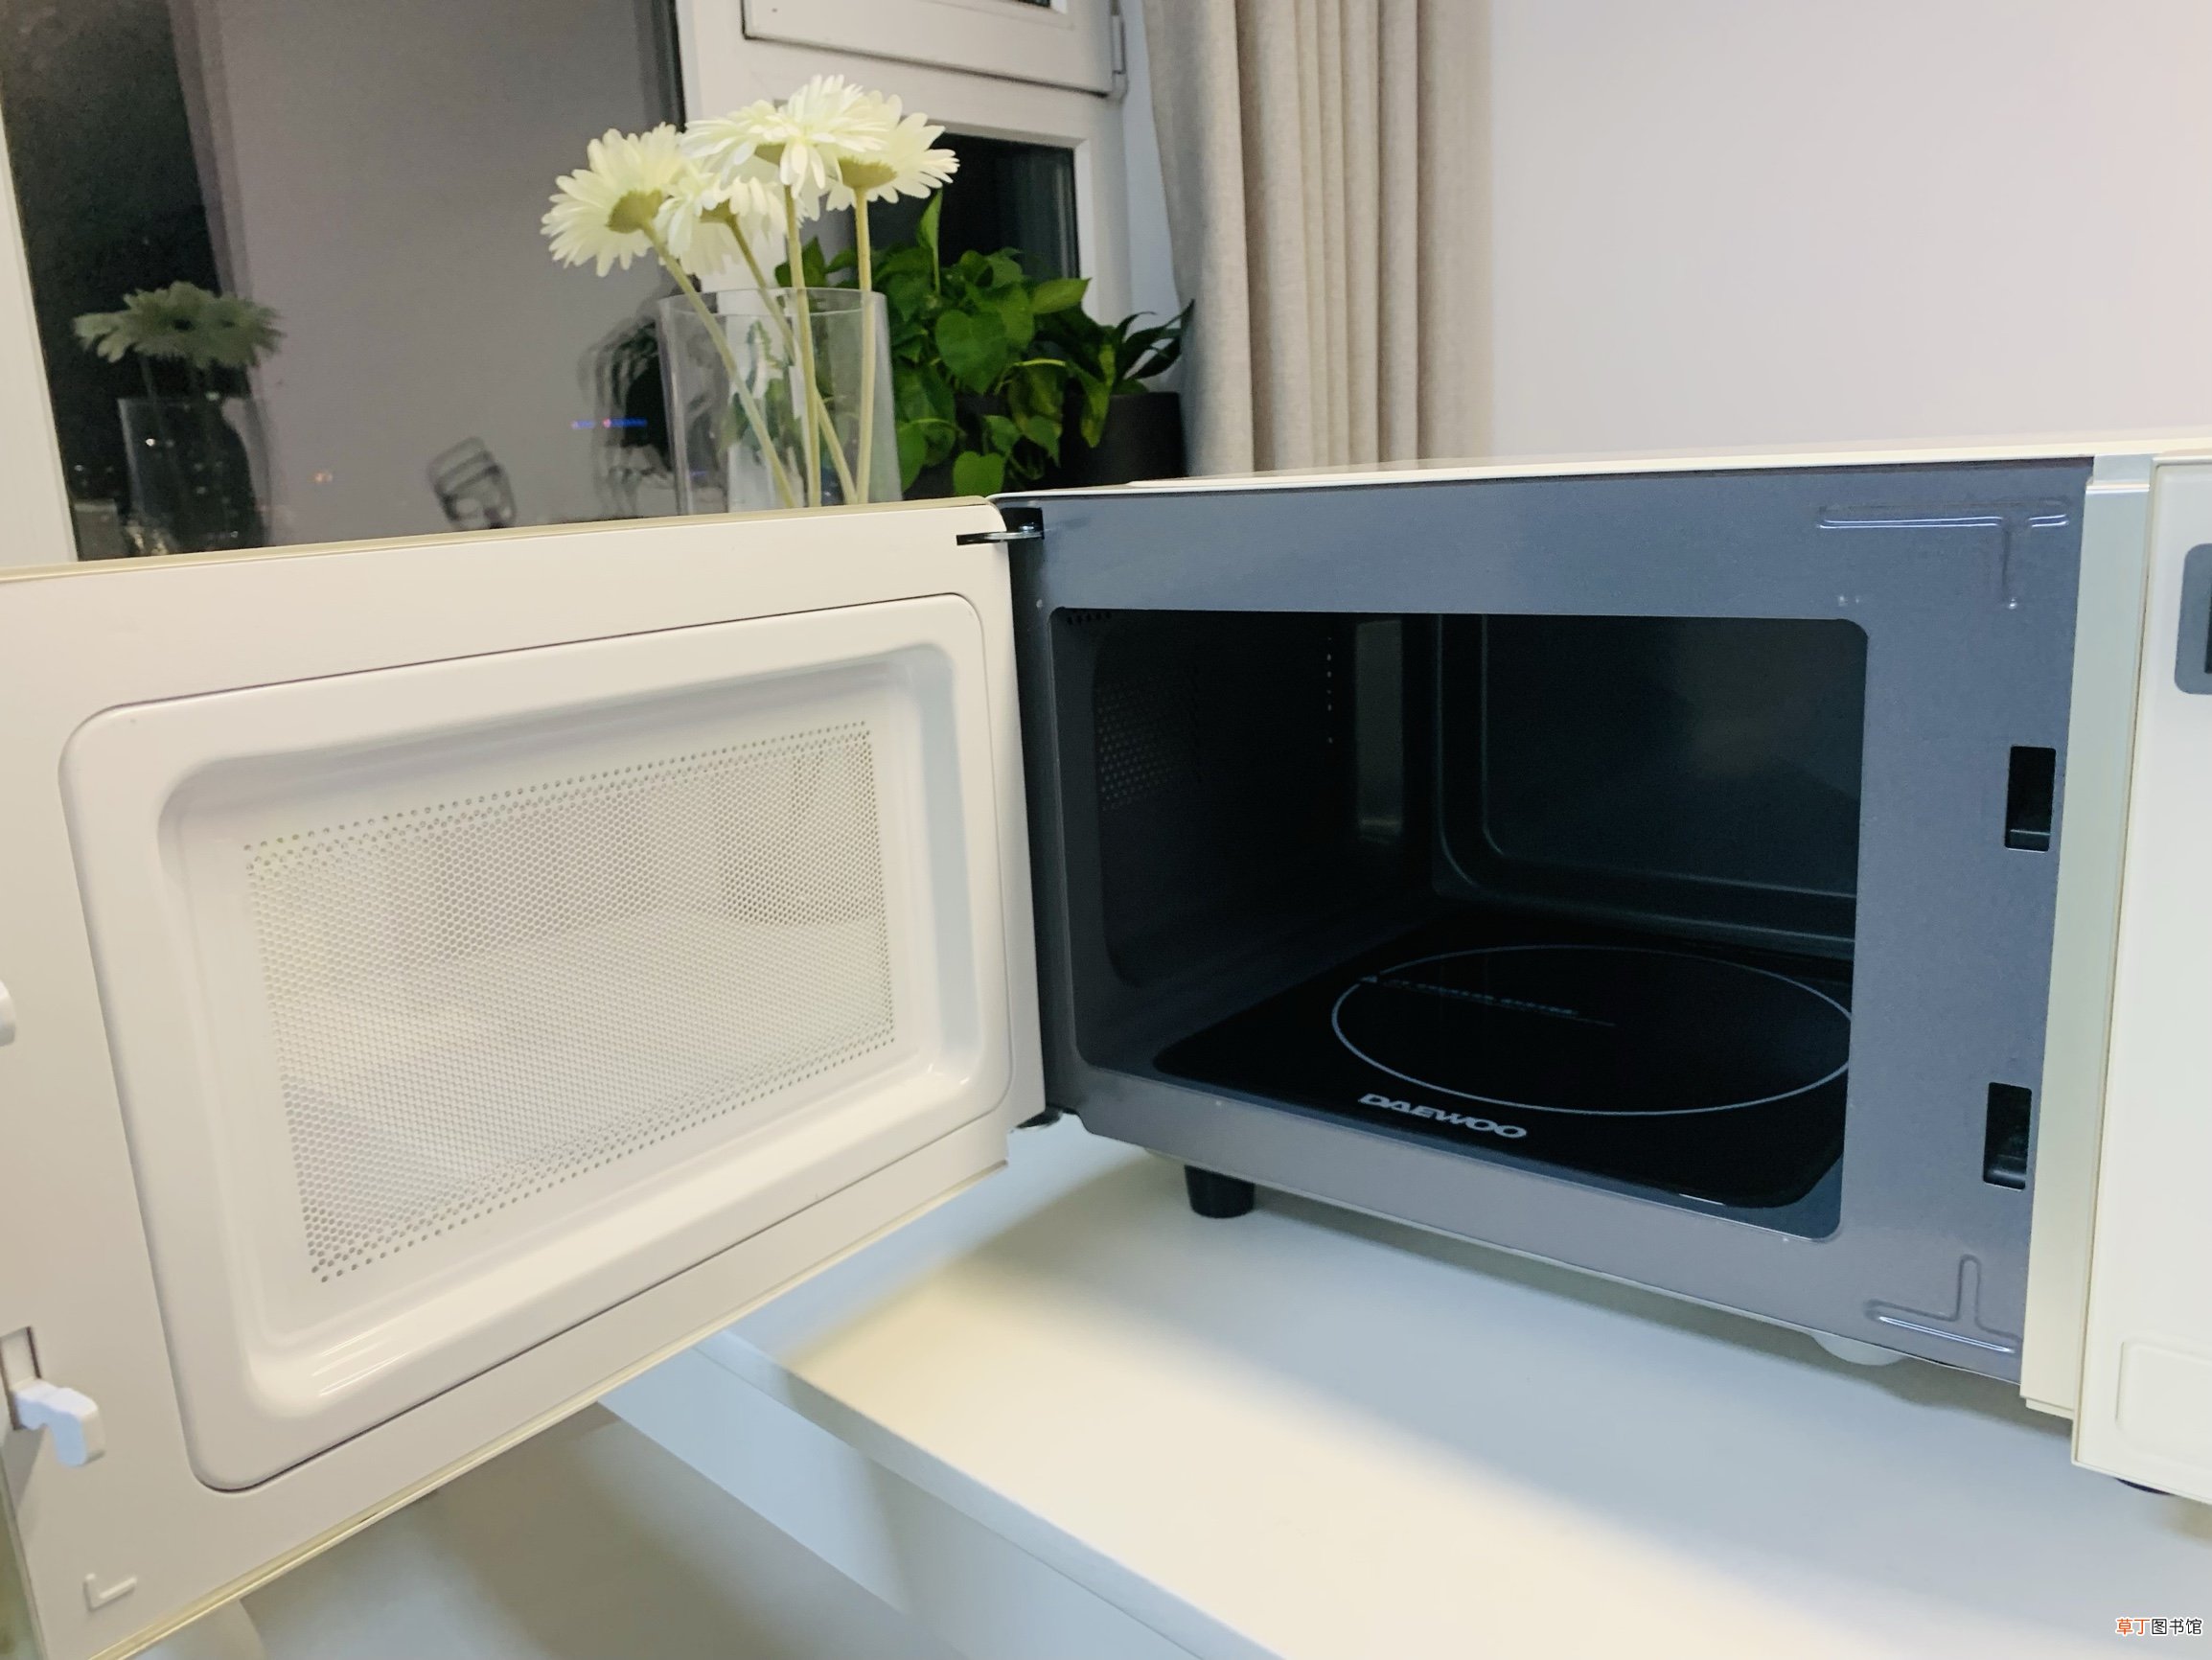 能放进微波炉的食物容器 微波炉可以热塑料盒吗